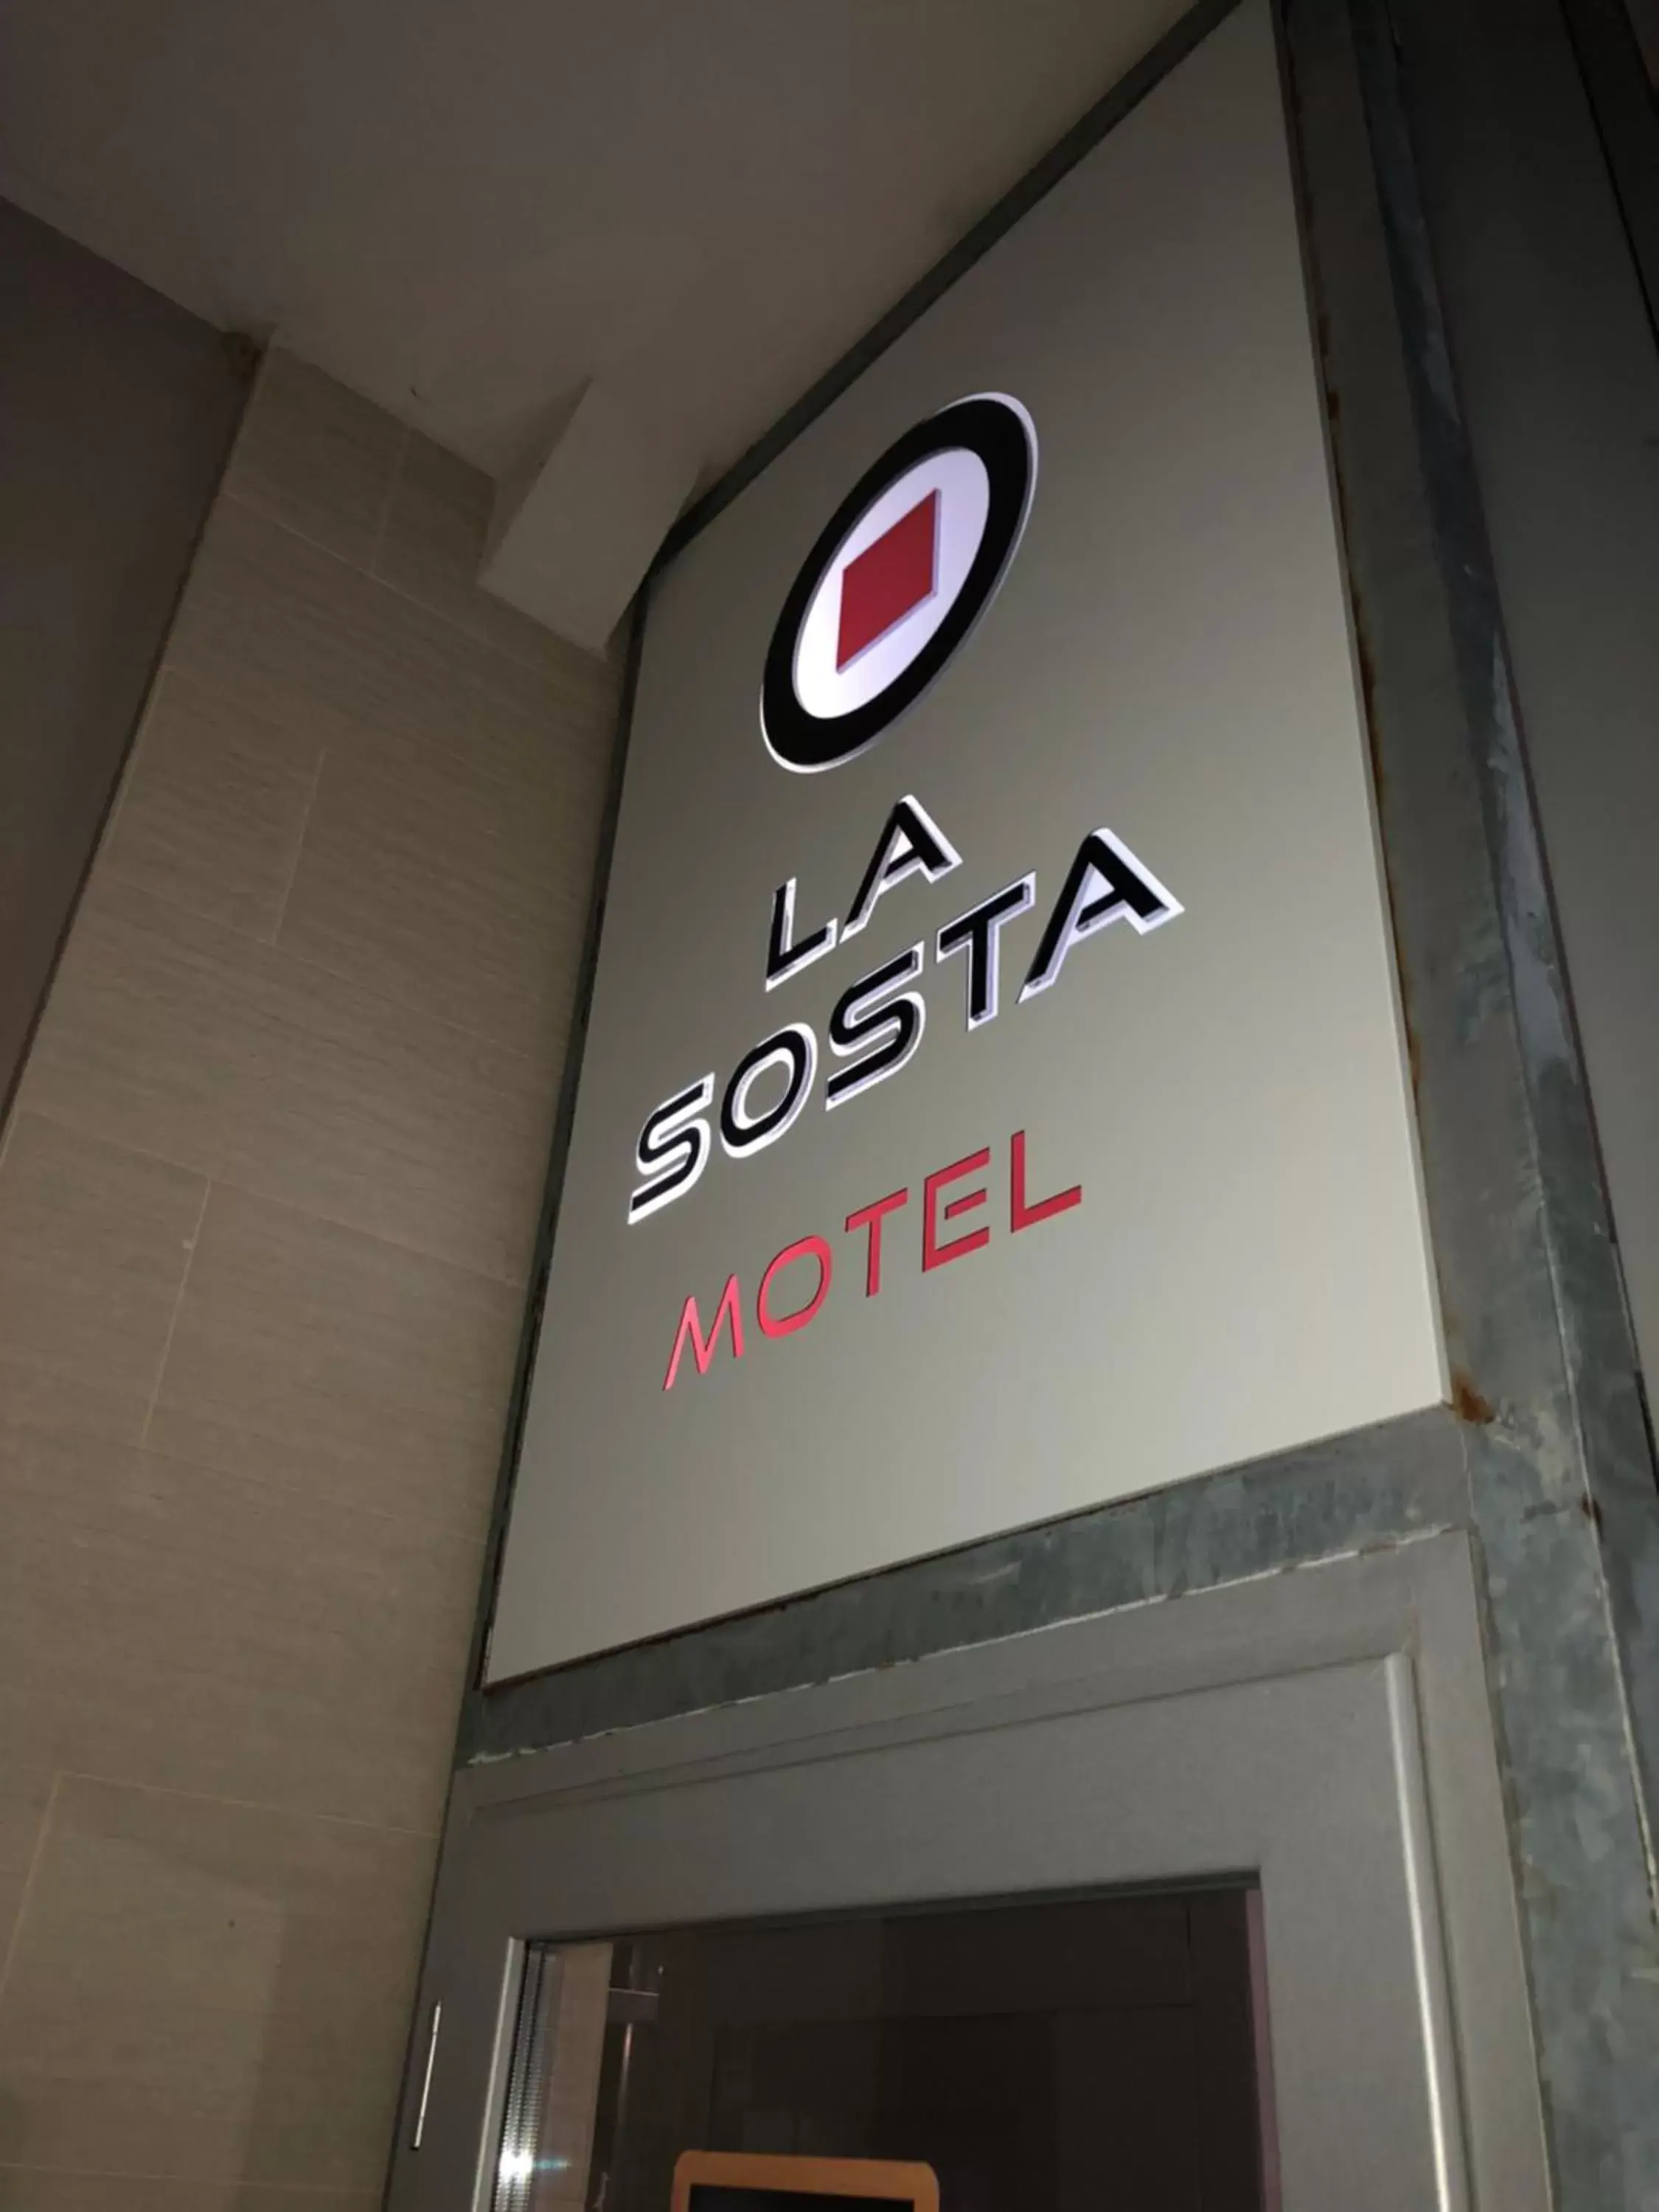 Property logo or sign in La Sosta Motel Tavola Calda